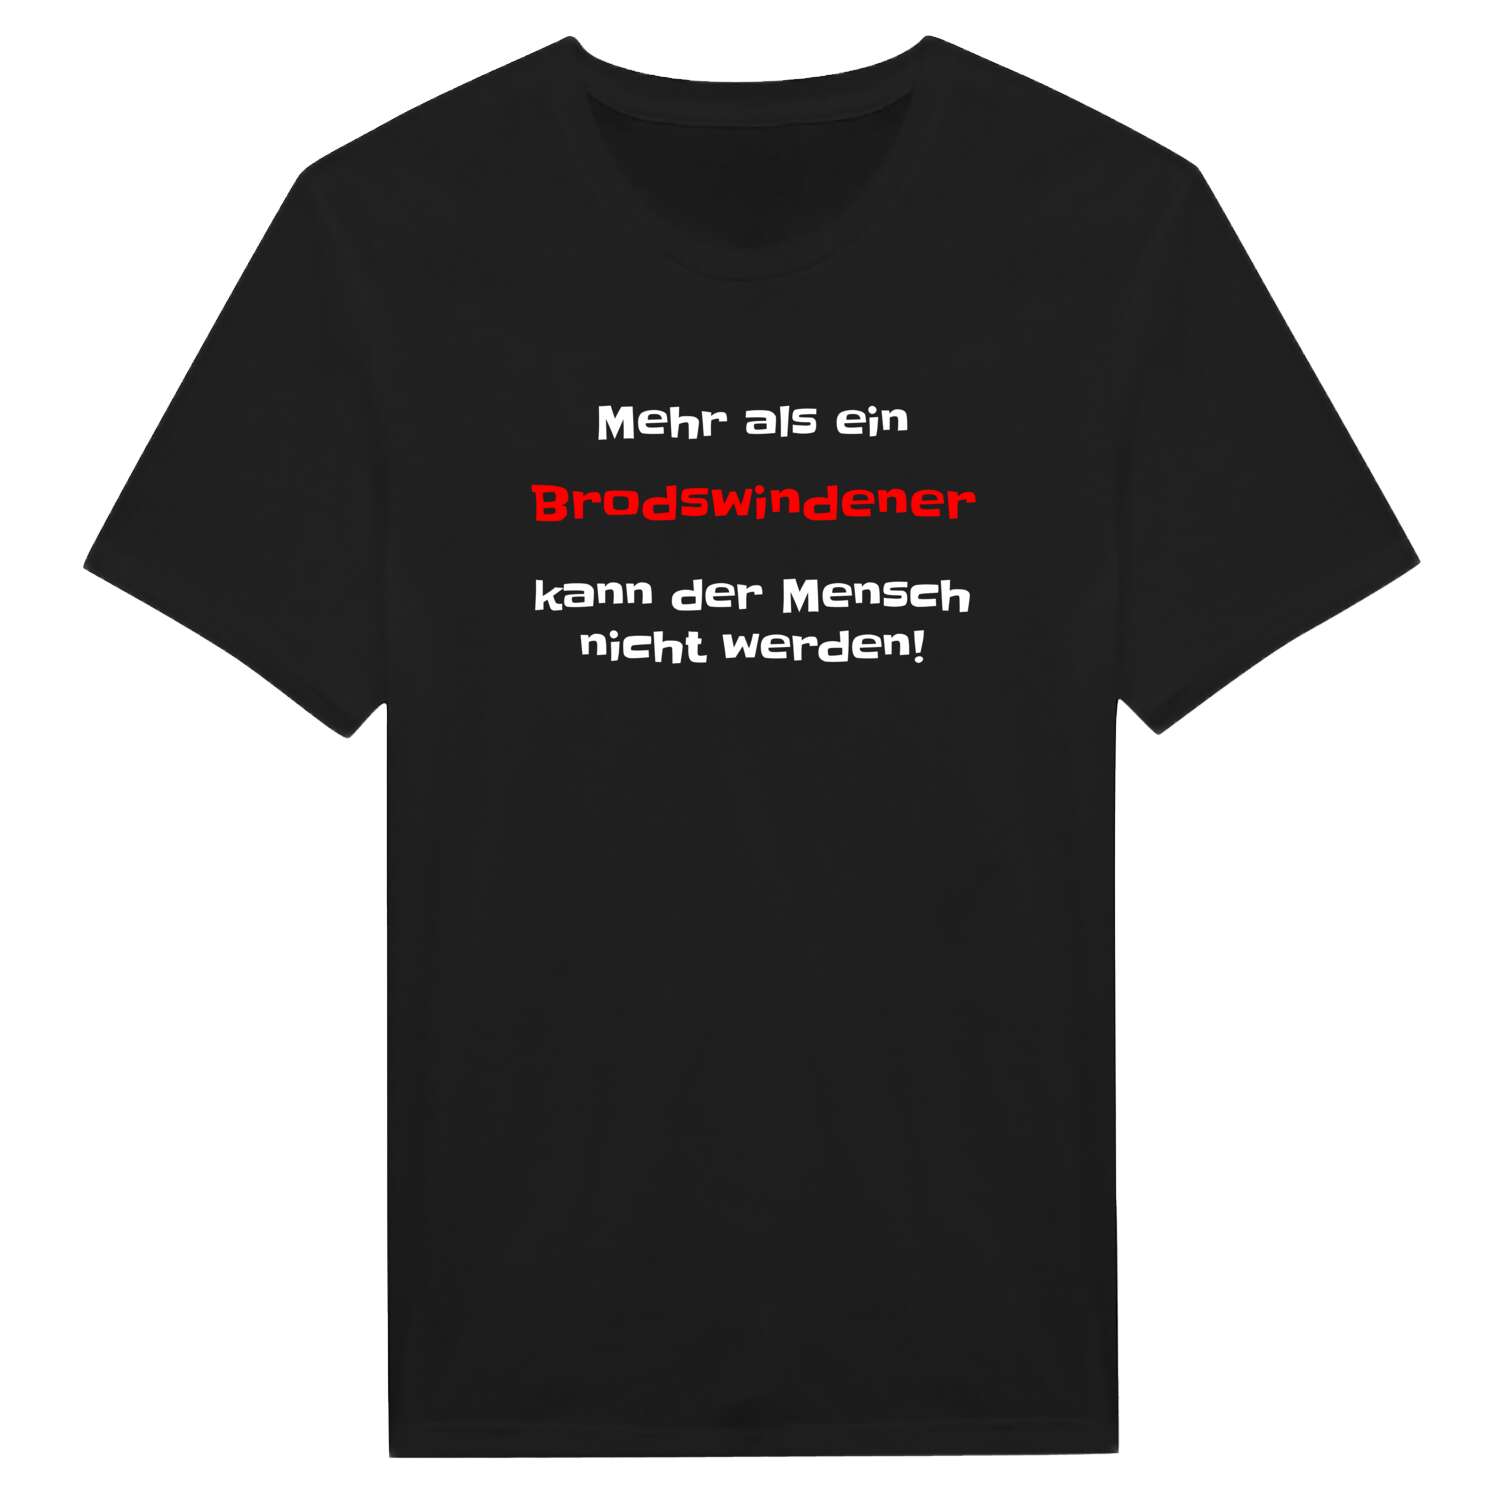 Brodswinden T-Shirt »Mehr als ein«